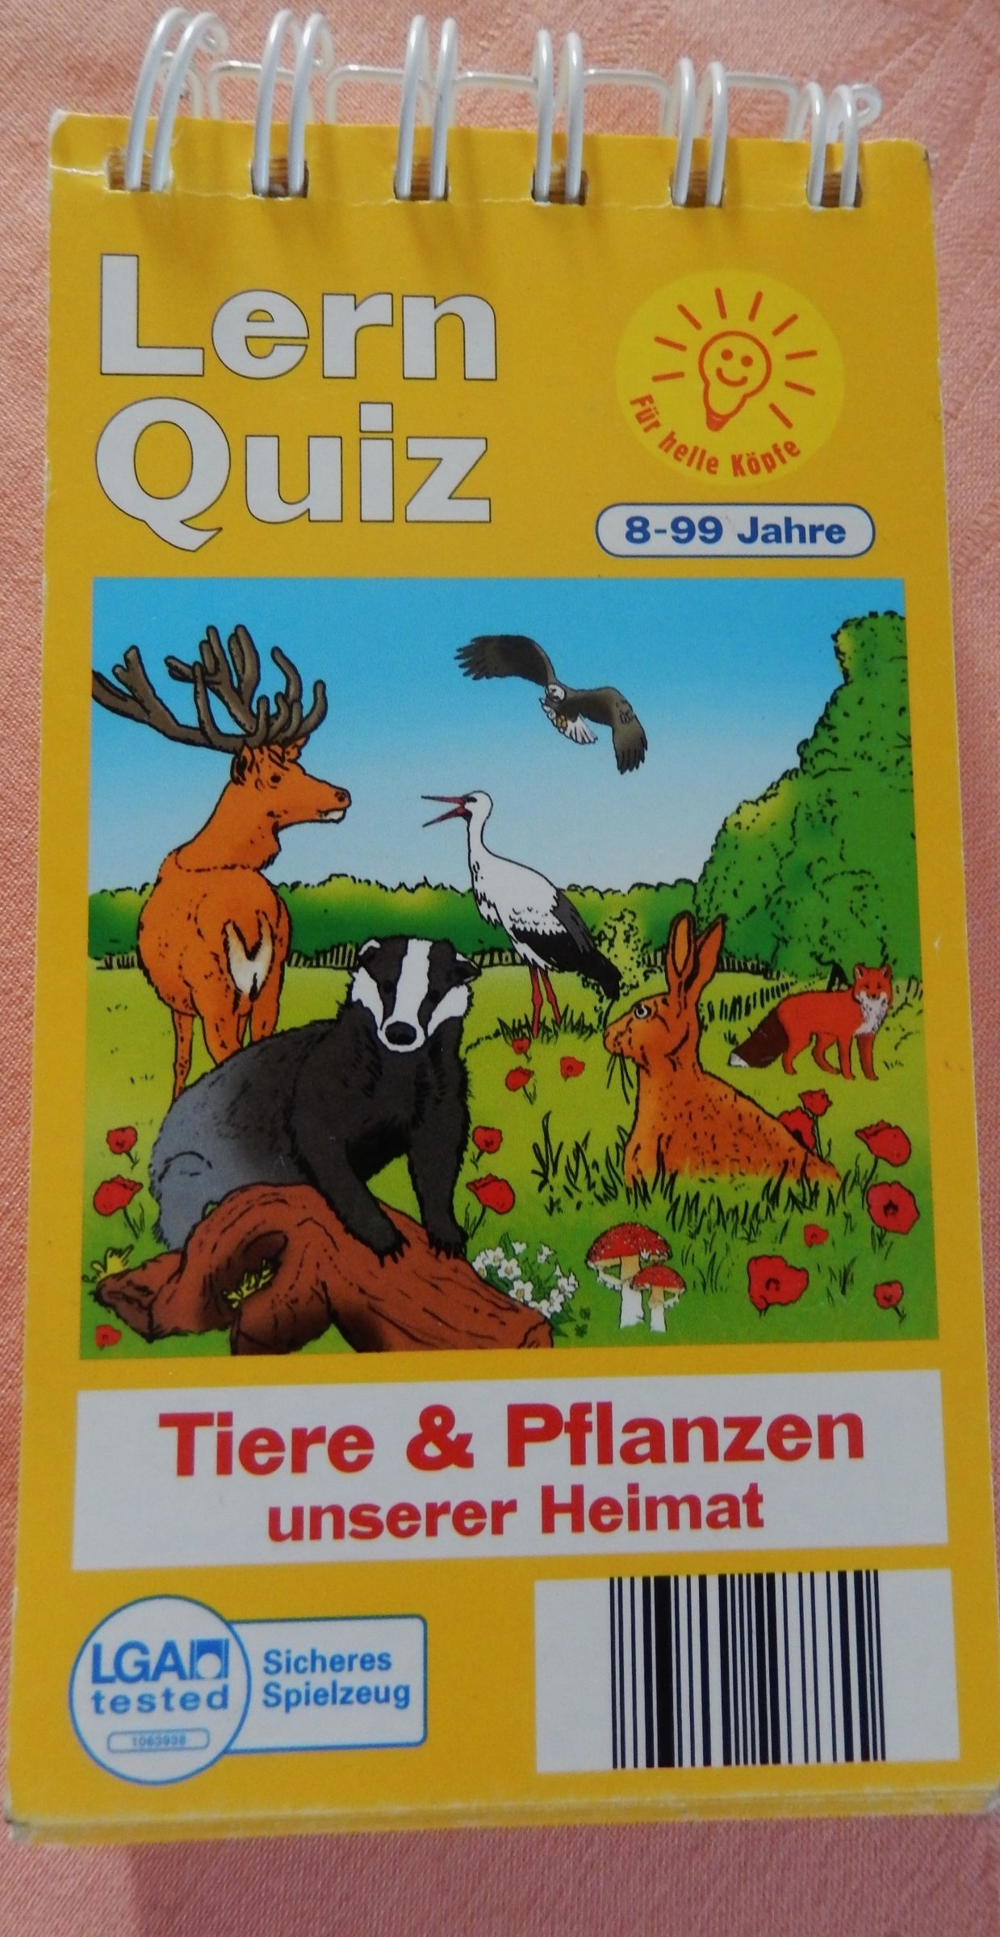 Lern Quiz - Tiere & Pflanzen unserer Heimat No 11 000 301 1